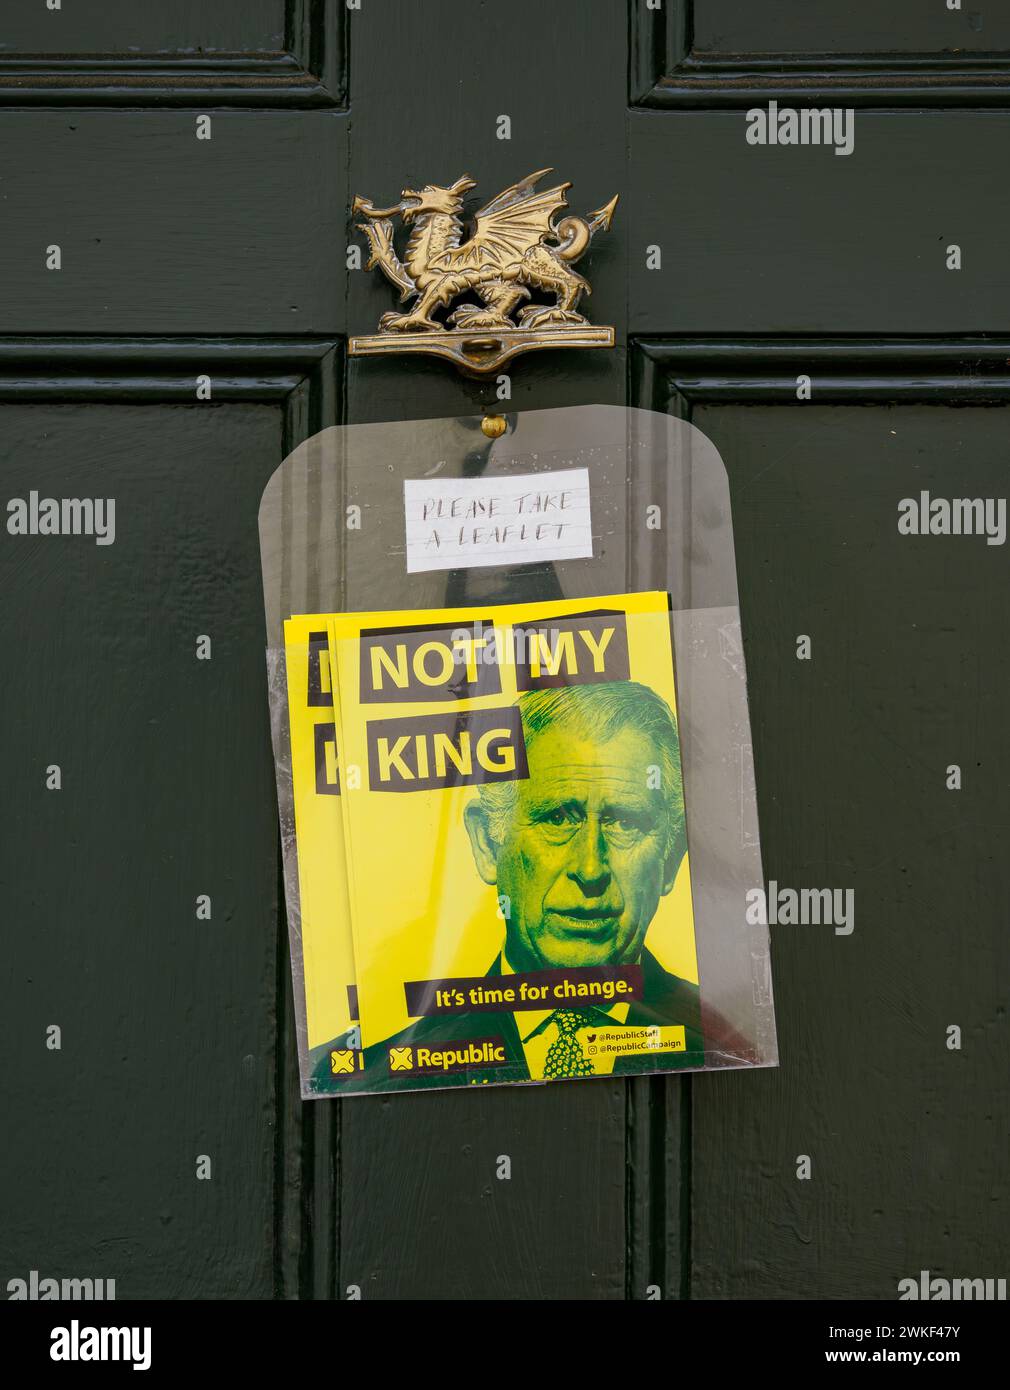 Flugblätter der Walisischen Republik, die die britische Monarchie ablehnen und die Unabhängigkeit fordern, an der Tür eines Landhauses in Südwales Großbritannien Stockfoto